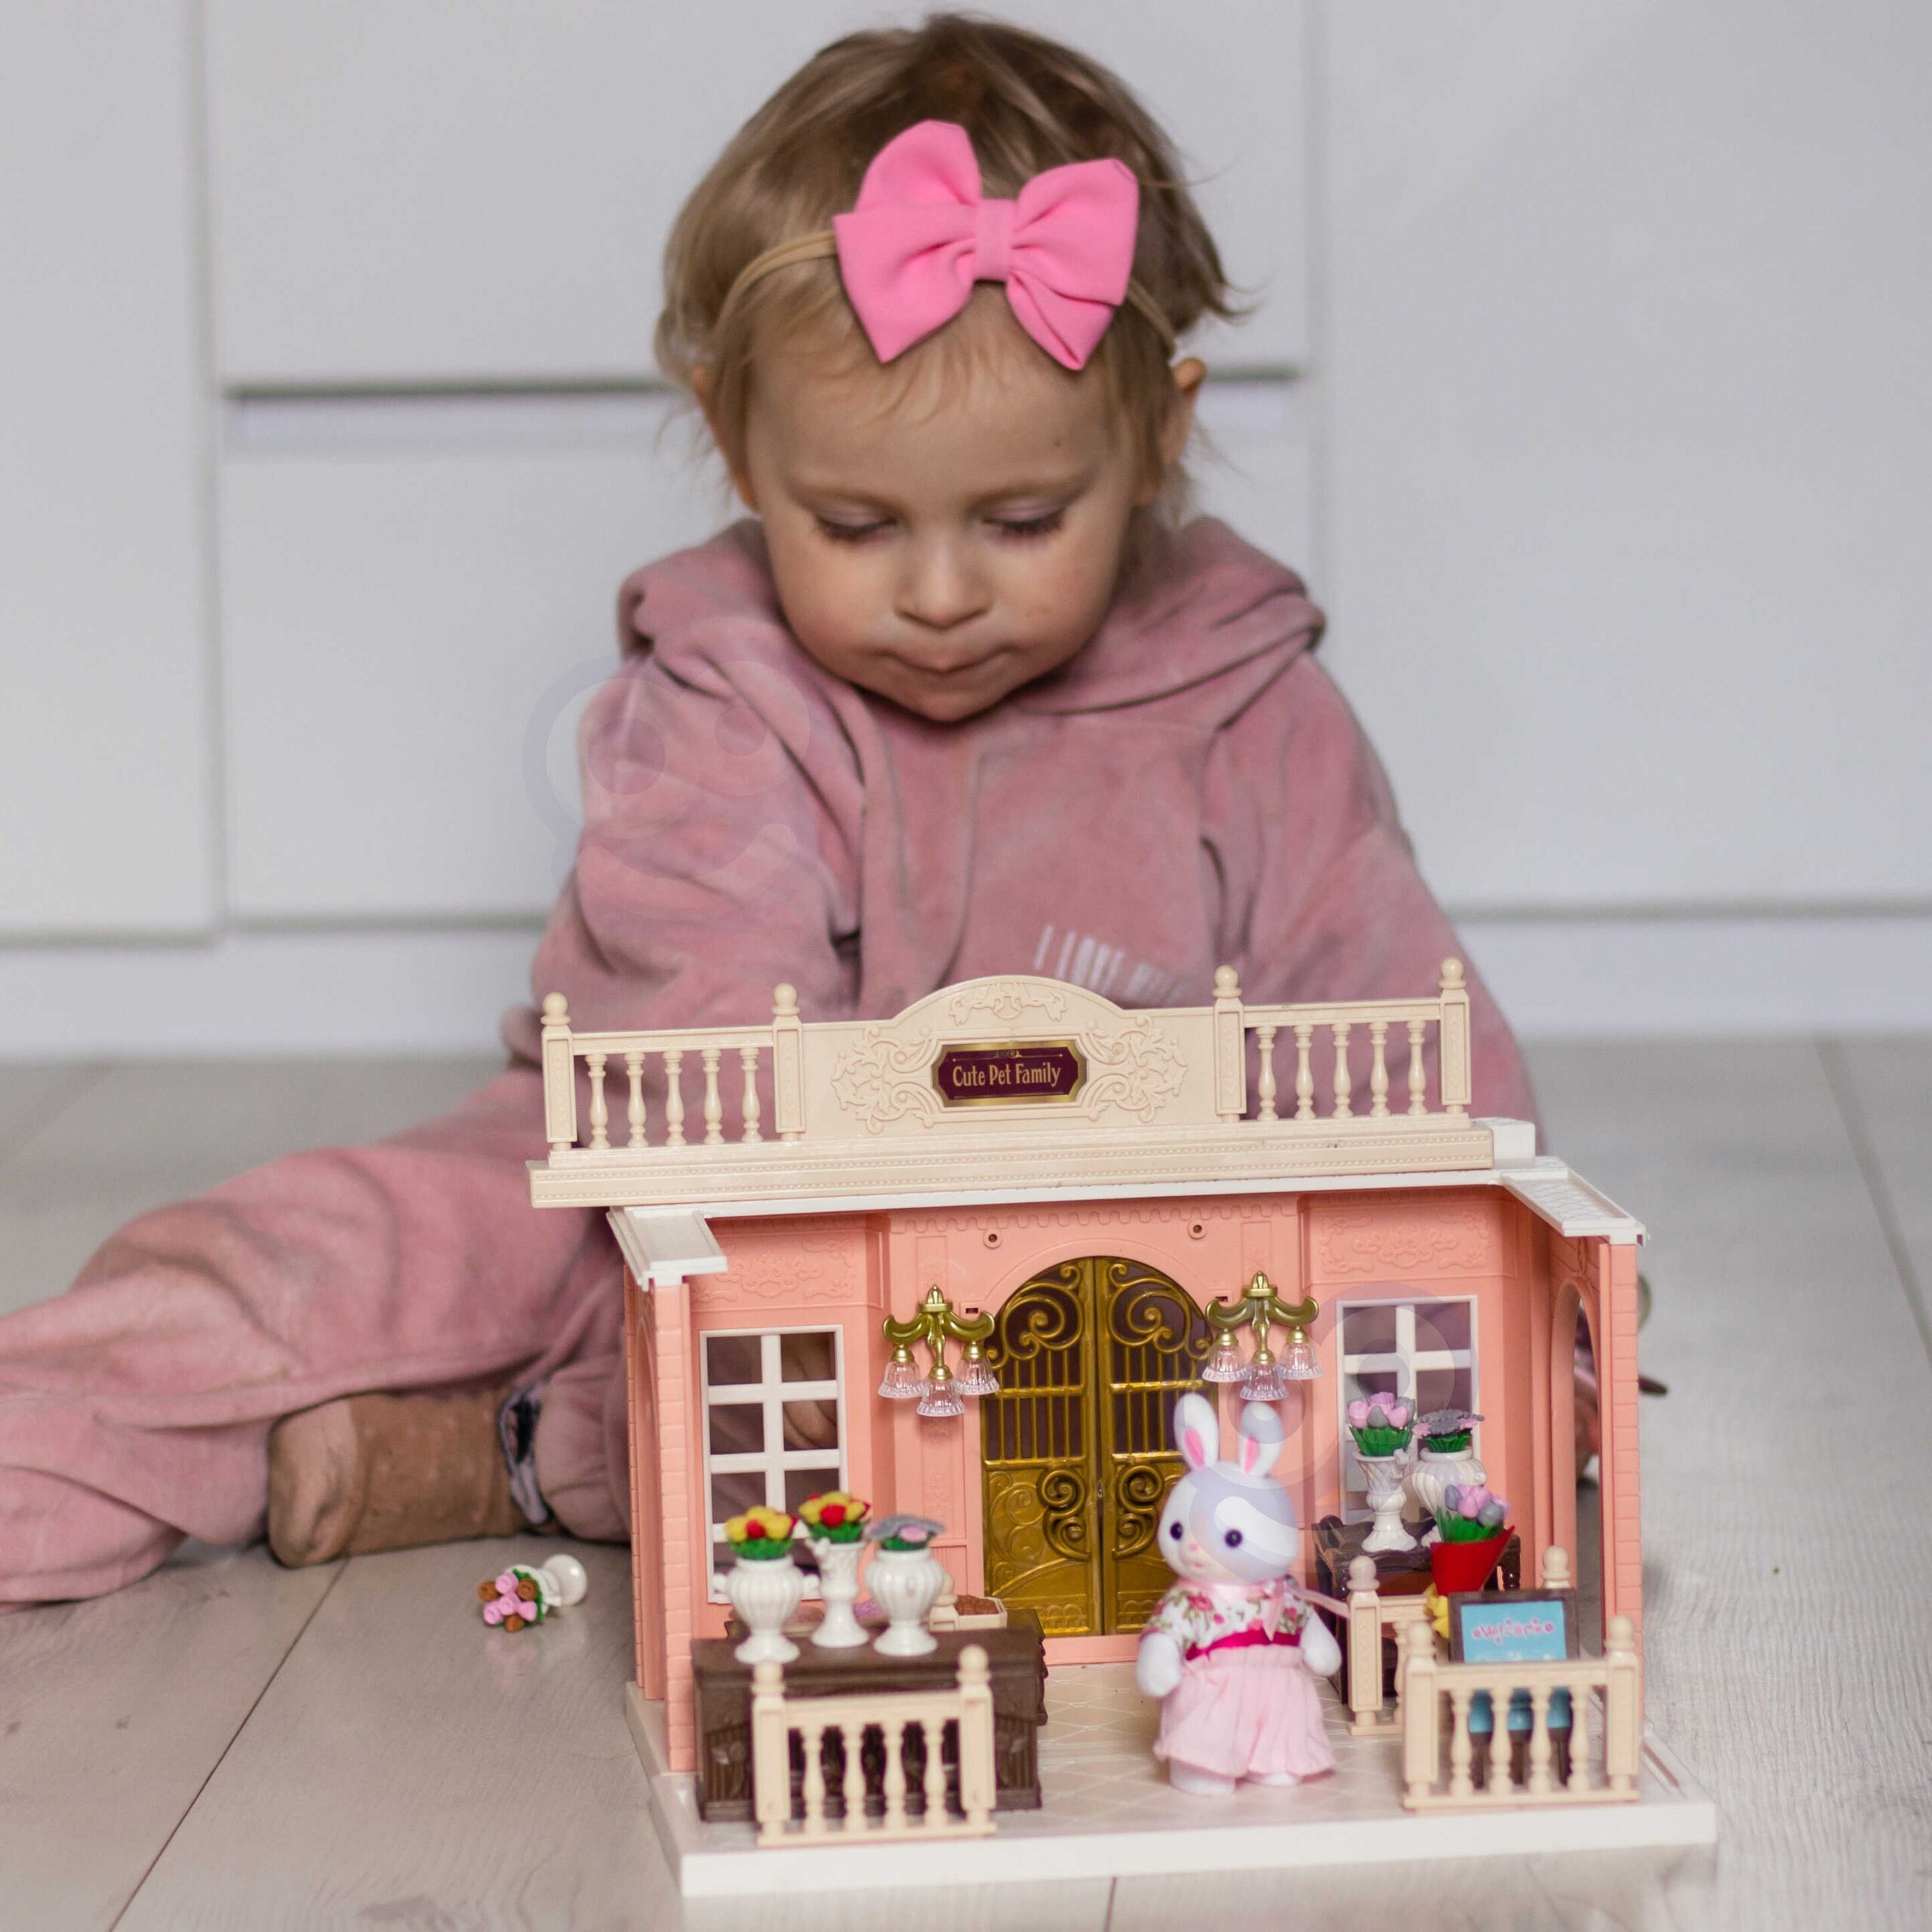 Domek dla lalek - rodzina królików, kwiaciarnia + figurka, zabawka dla dzieci, Woopie